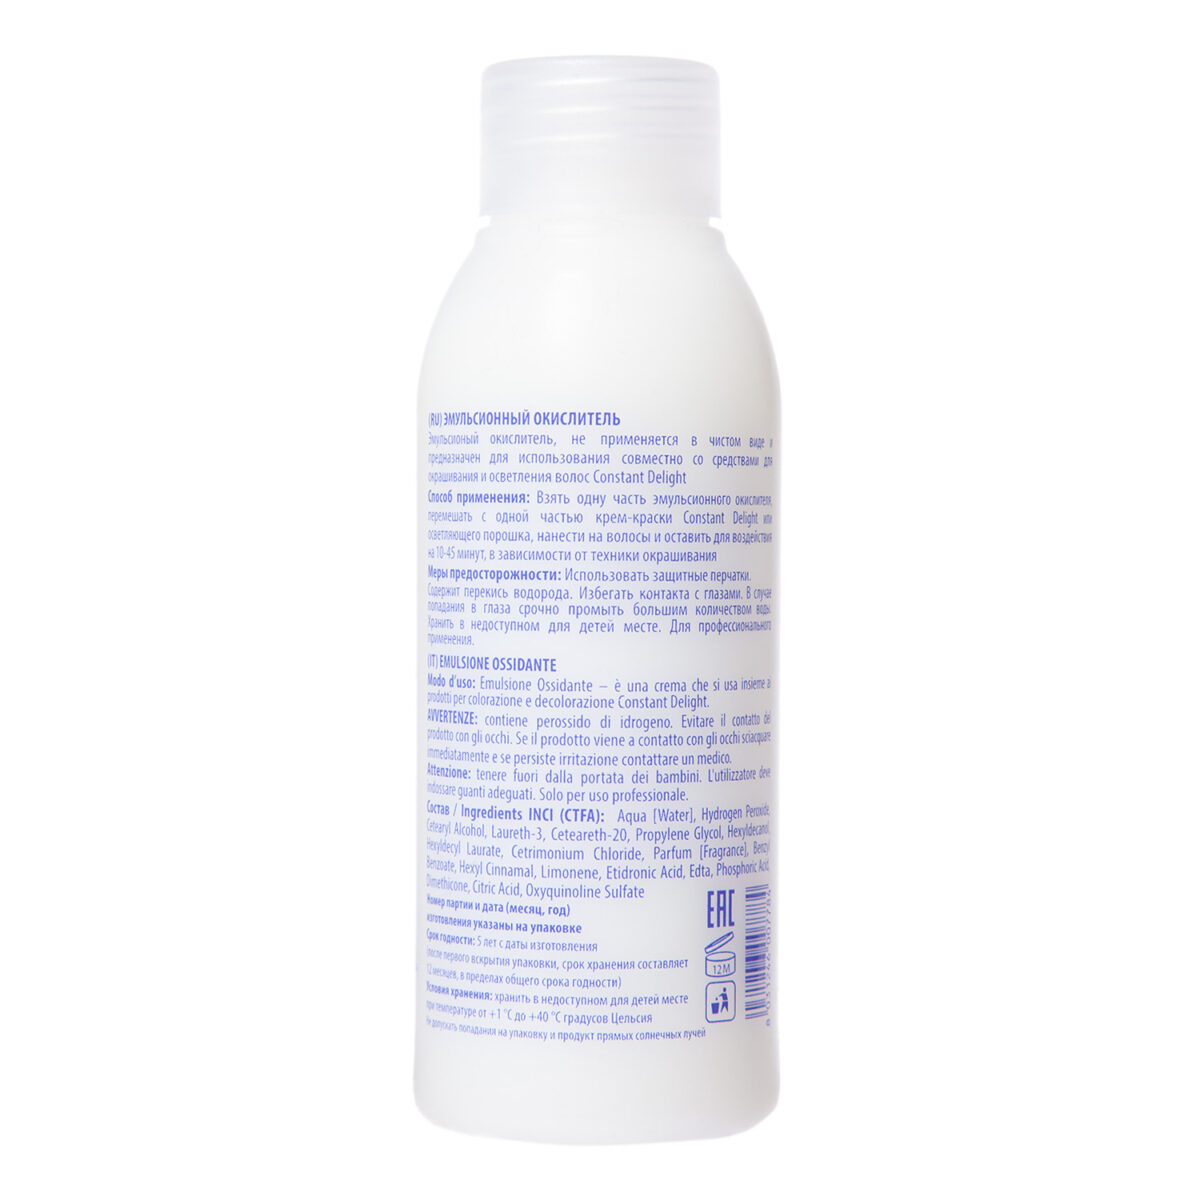 Emulsione Ossidante Эмульсионный окислитель 3% 100 мл CONSTANT DELIGHT